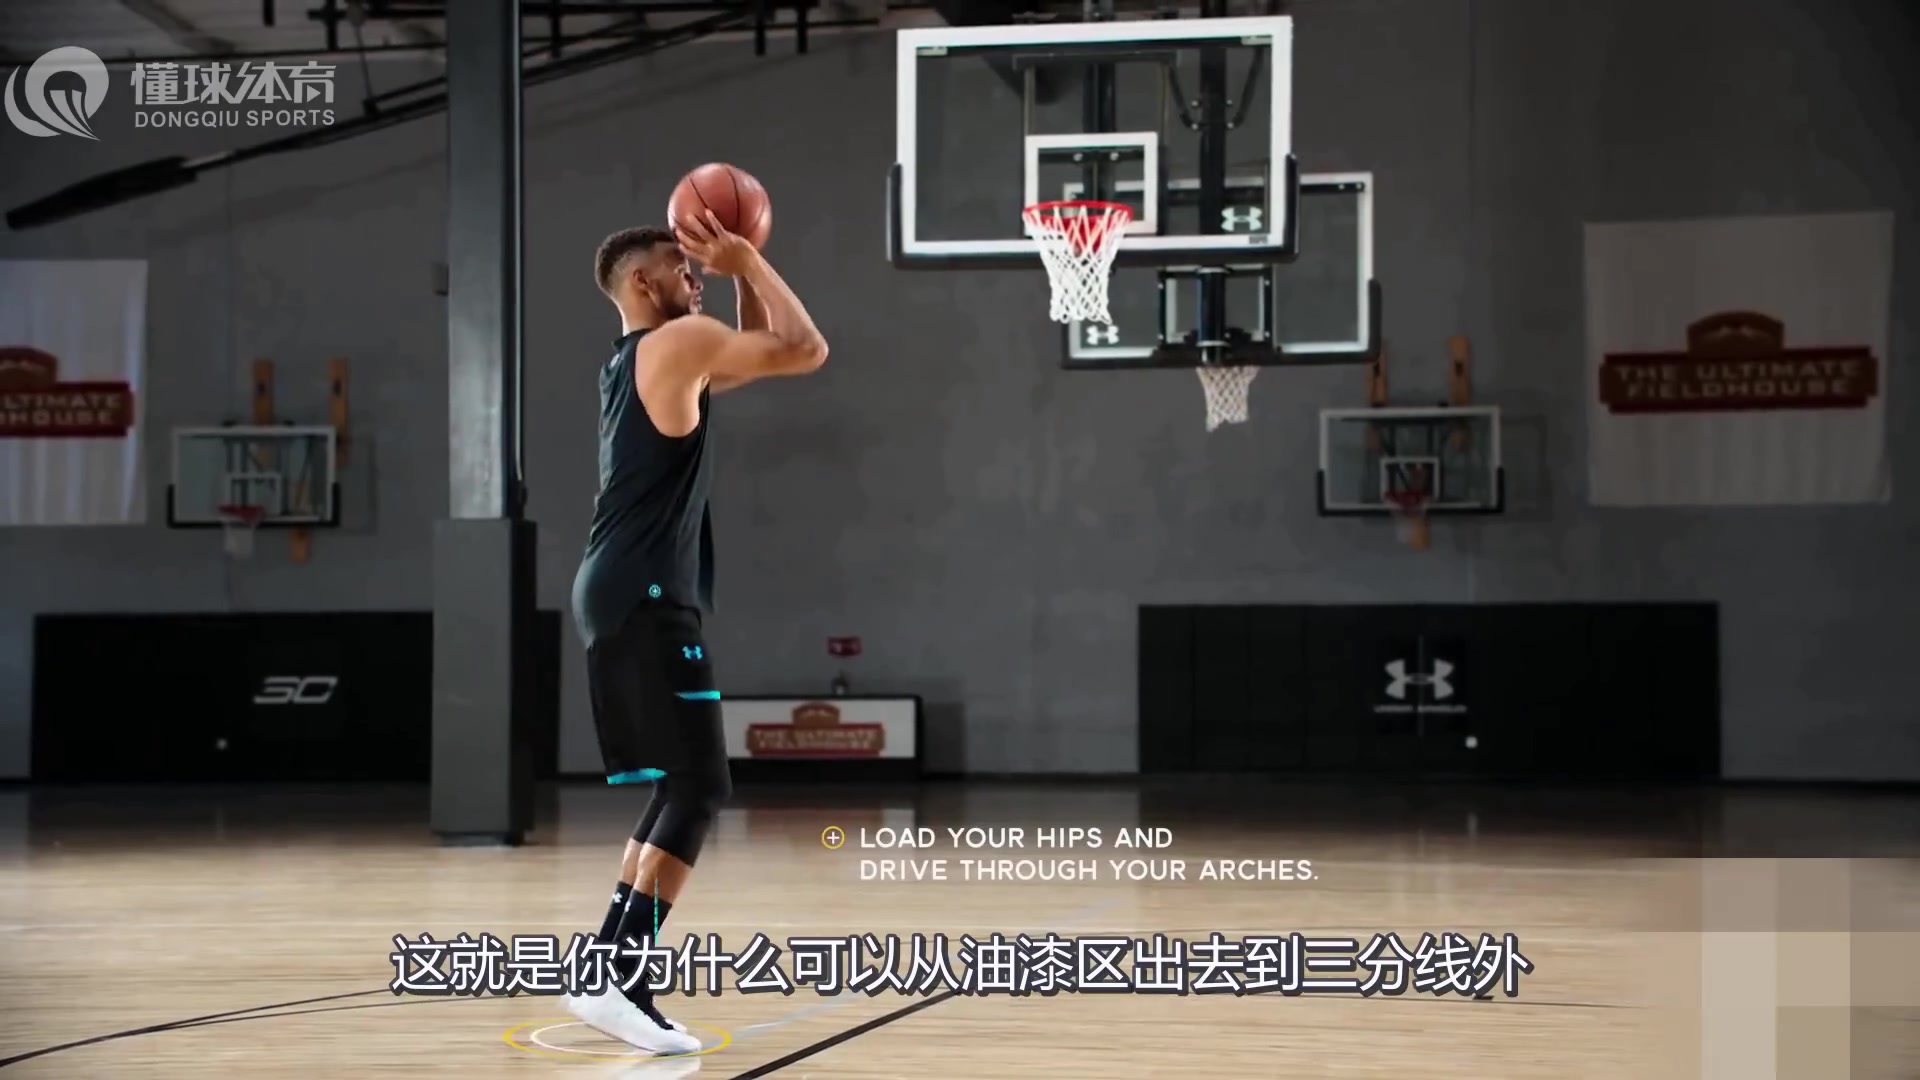 【中文字幕】库里在线篮球教学课程广告片  萌神强调自己不教扣篮